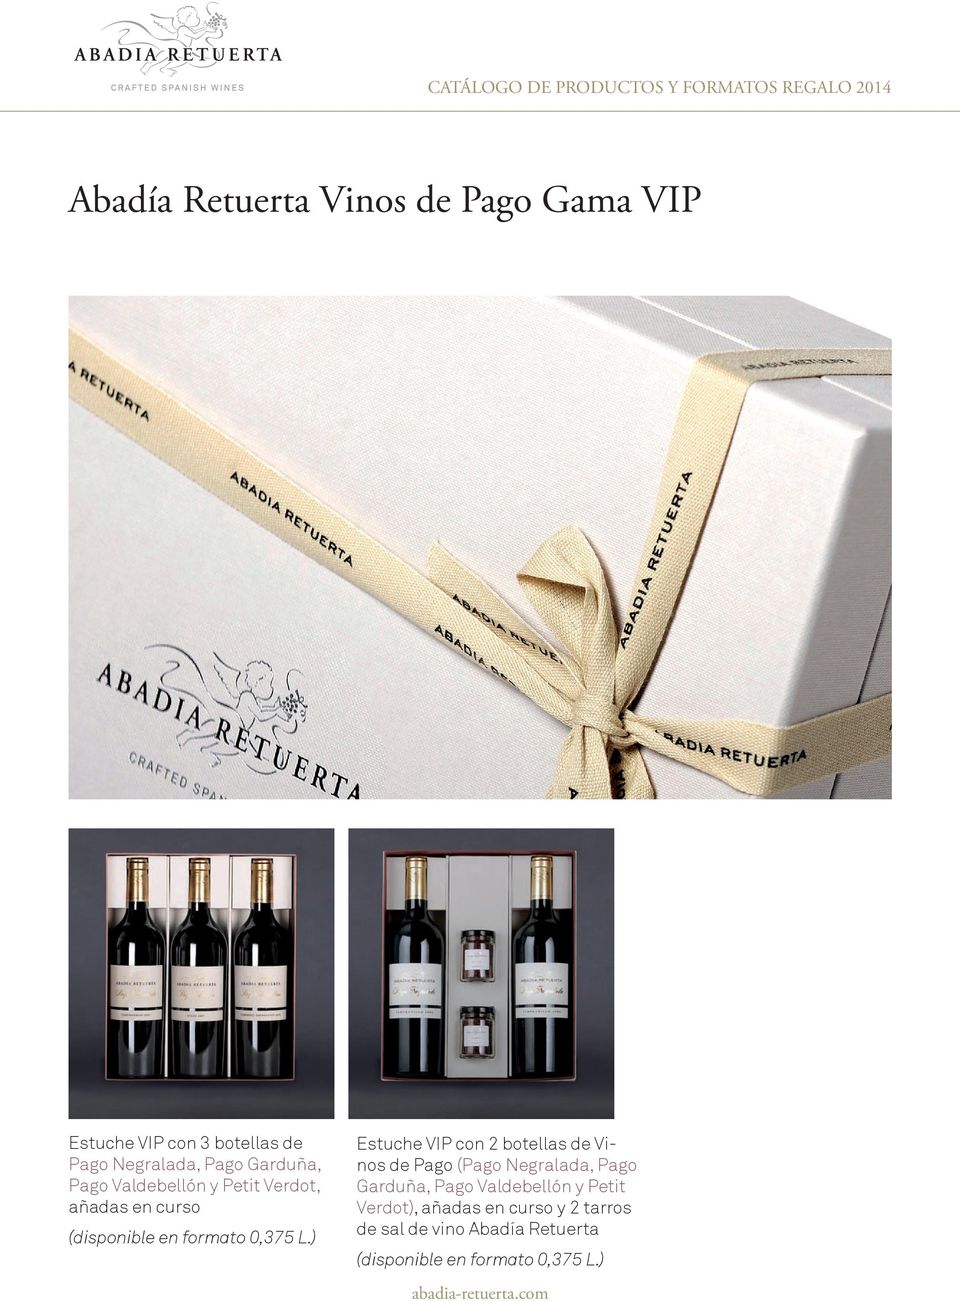 ) Estuche VIP con 2 botellas de Vinos de Pago (Pago Negralada, Pago Garduña, Pago Valdebellón